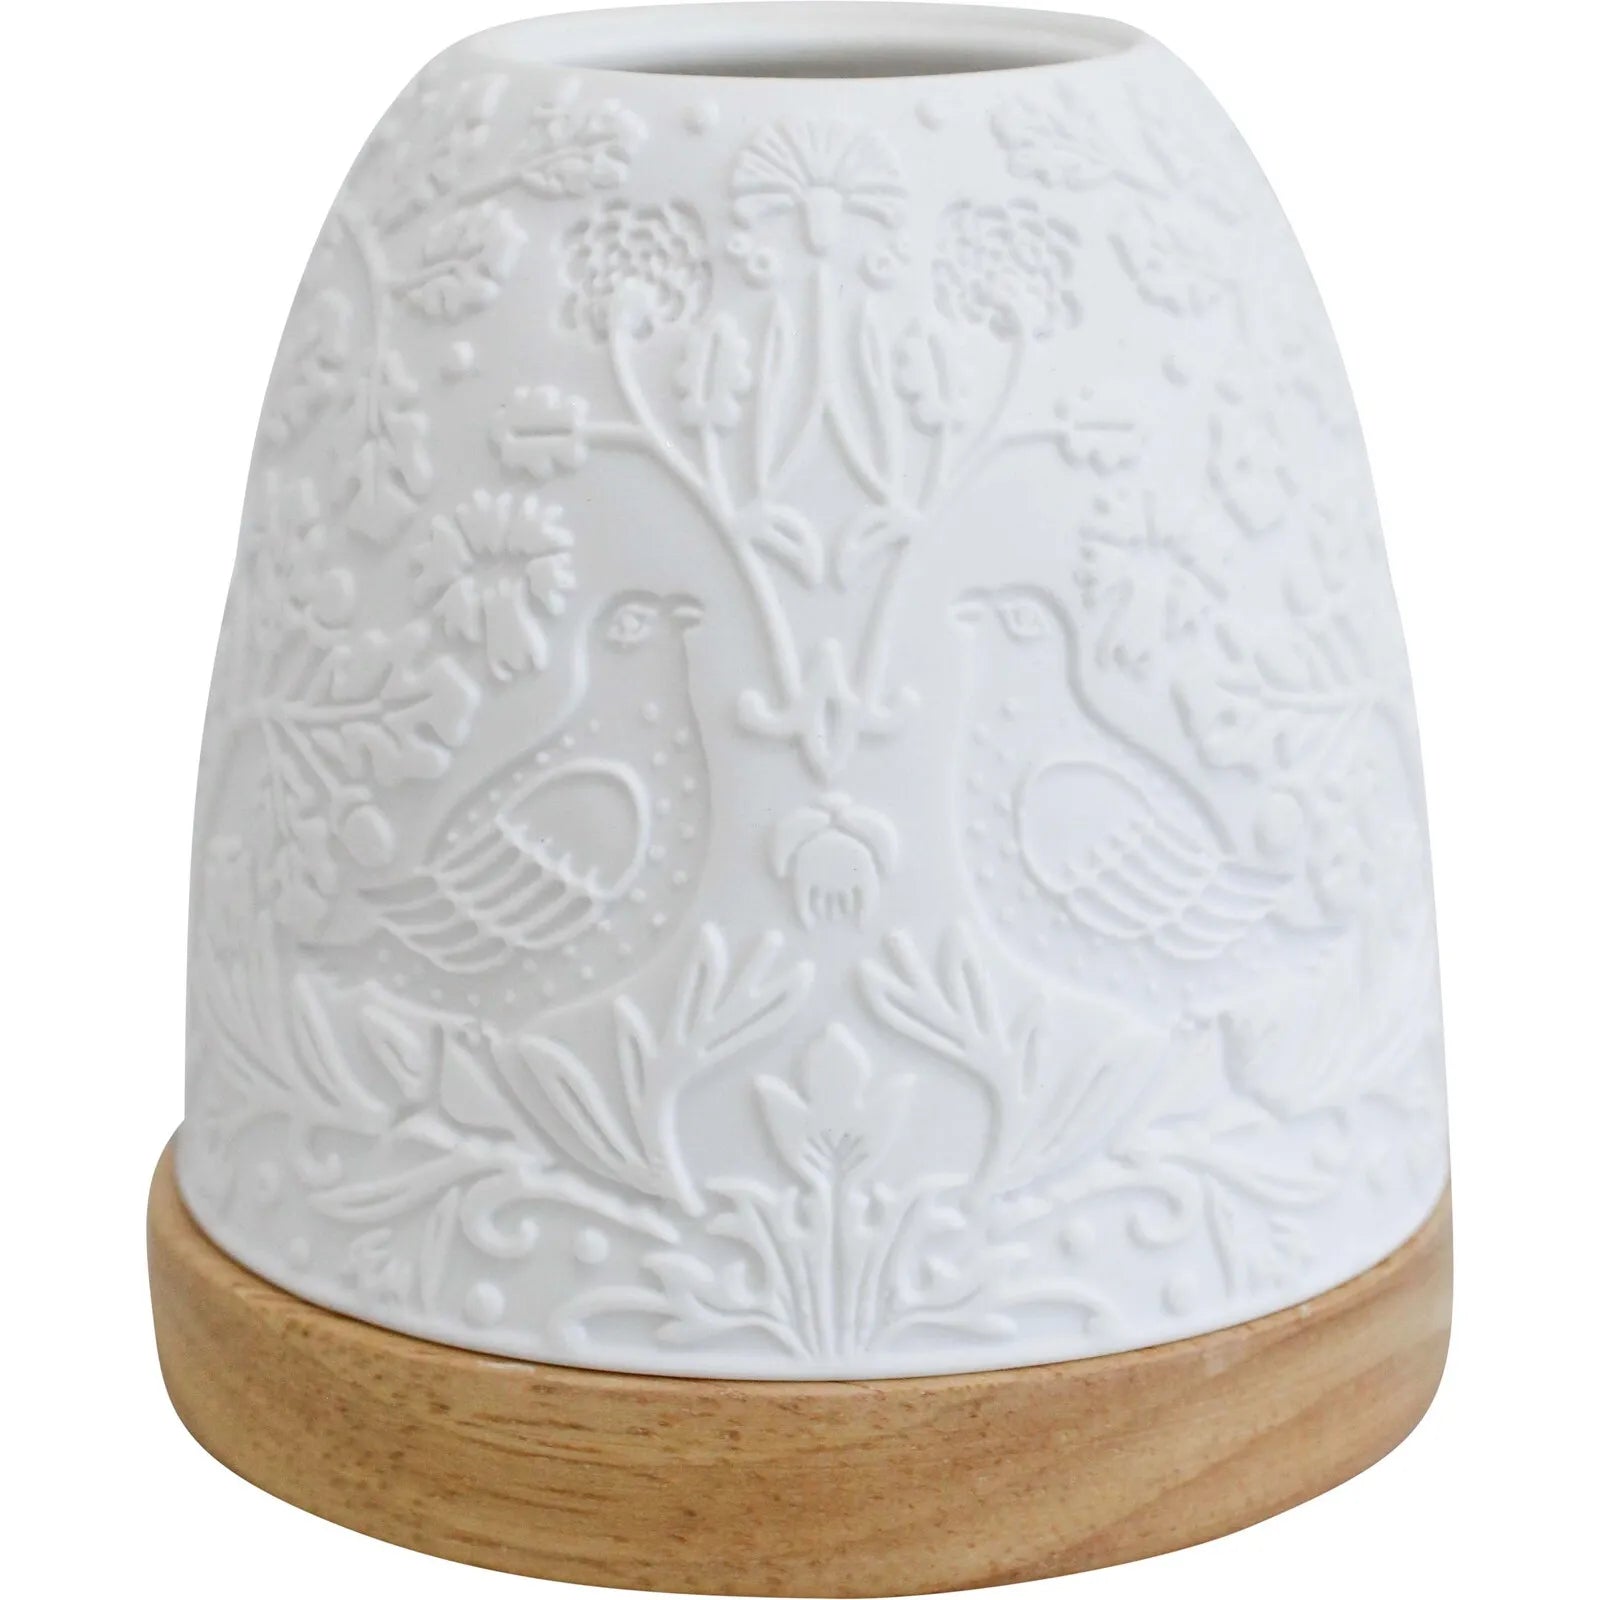 Porcelain tea light holder - William Morris